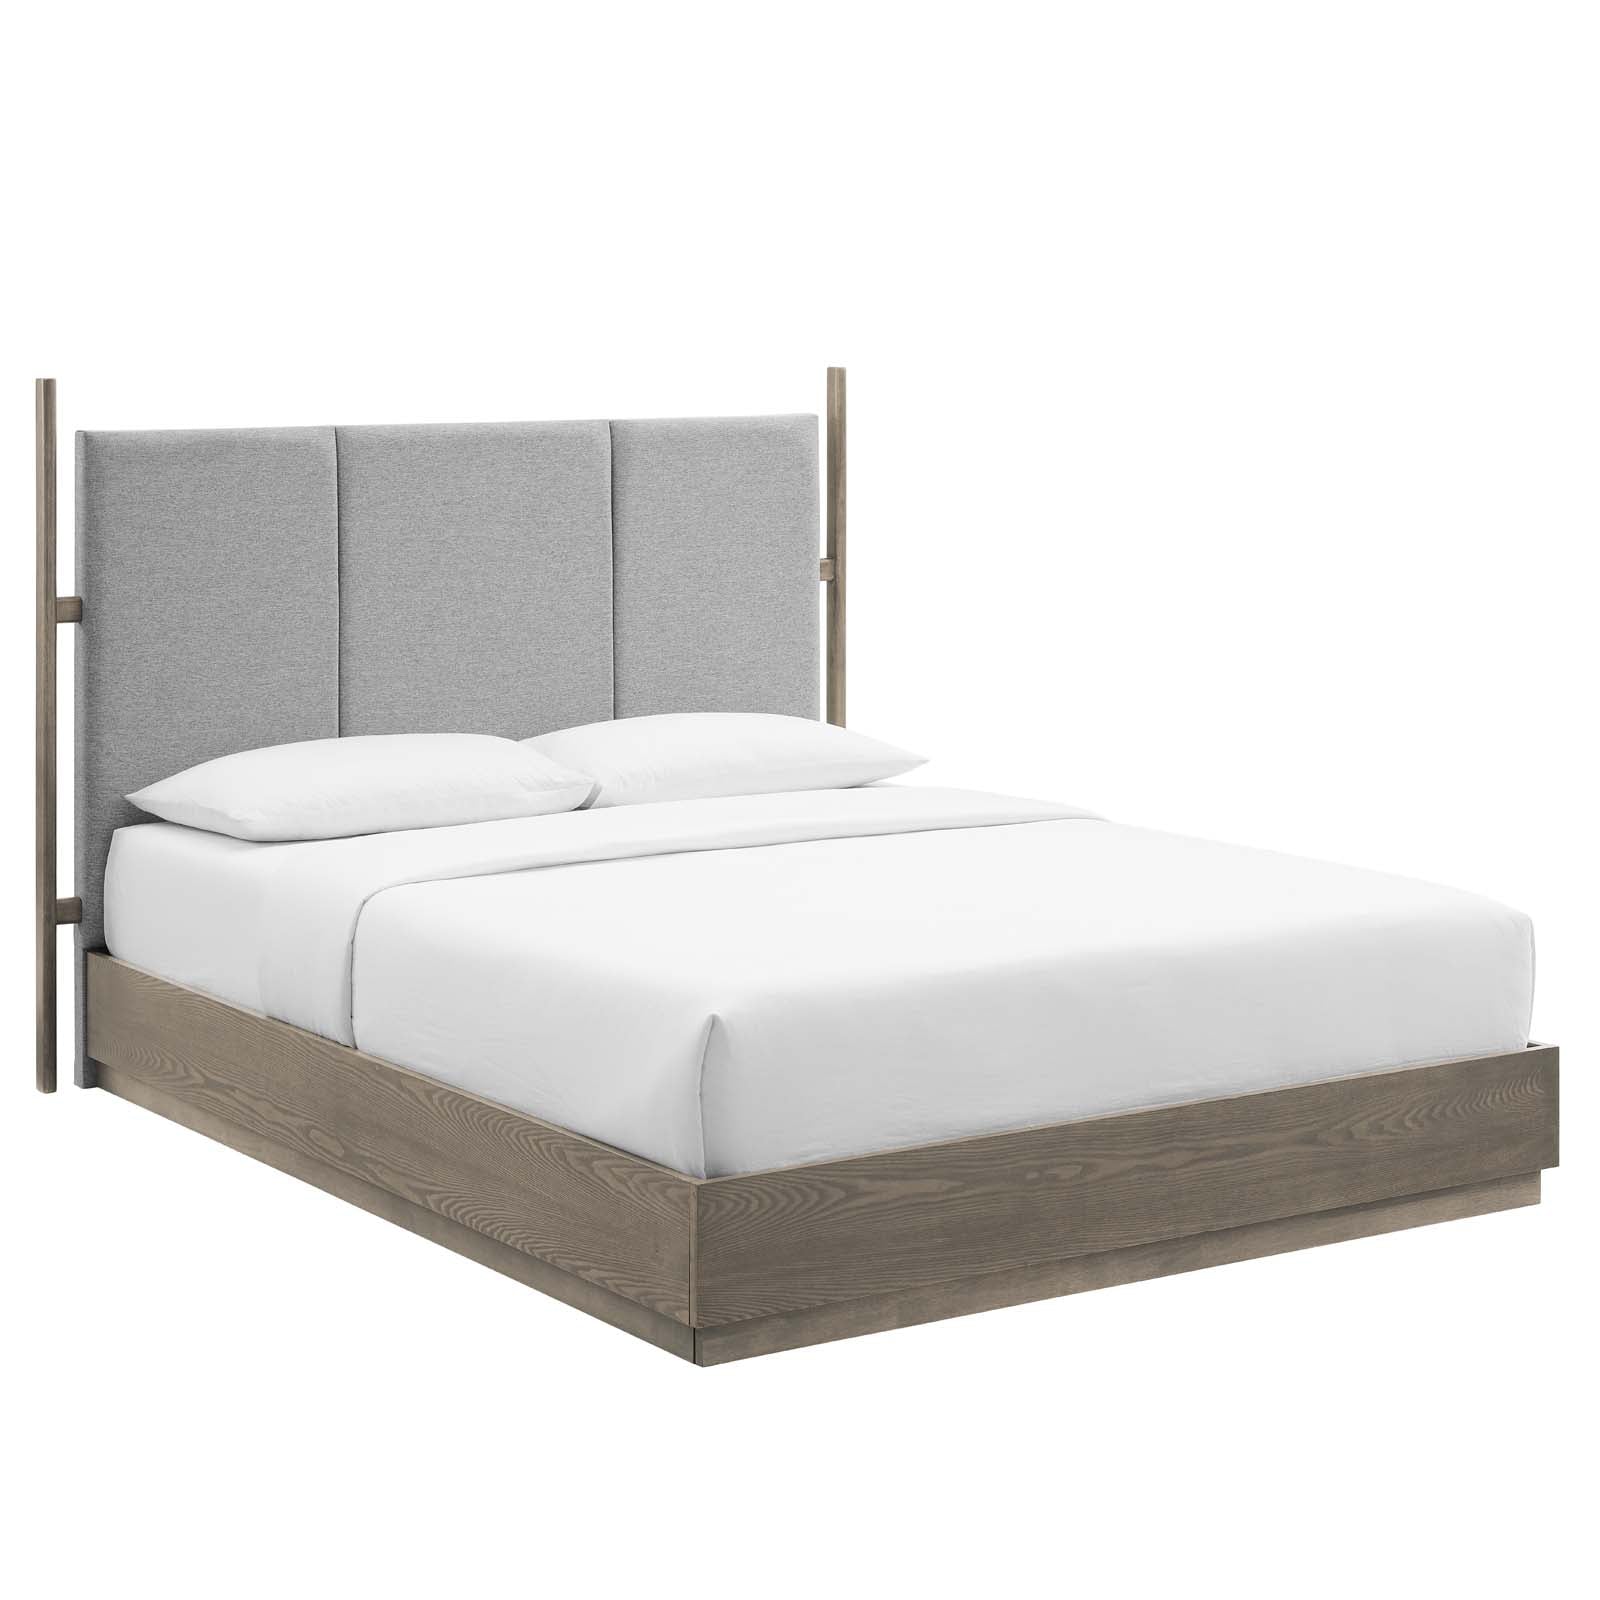 Modway Beds - Merritt Upholstered Queen Platform Bed Oak Light Gray